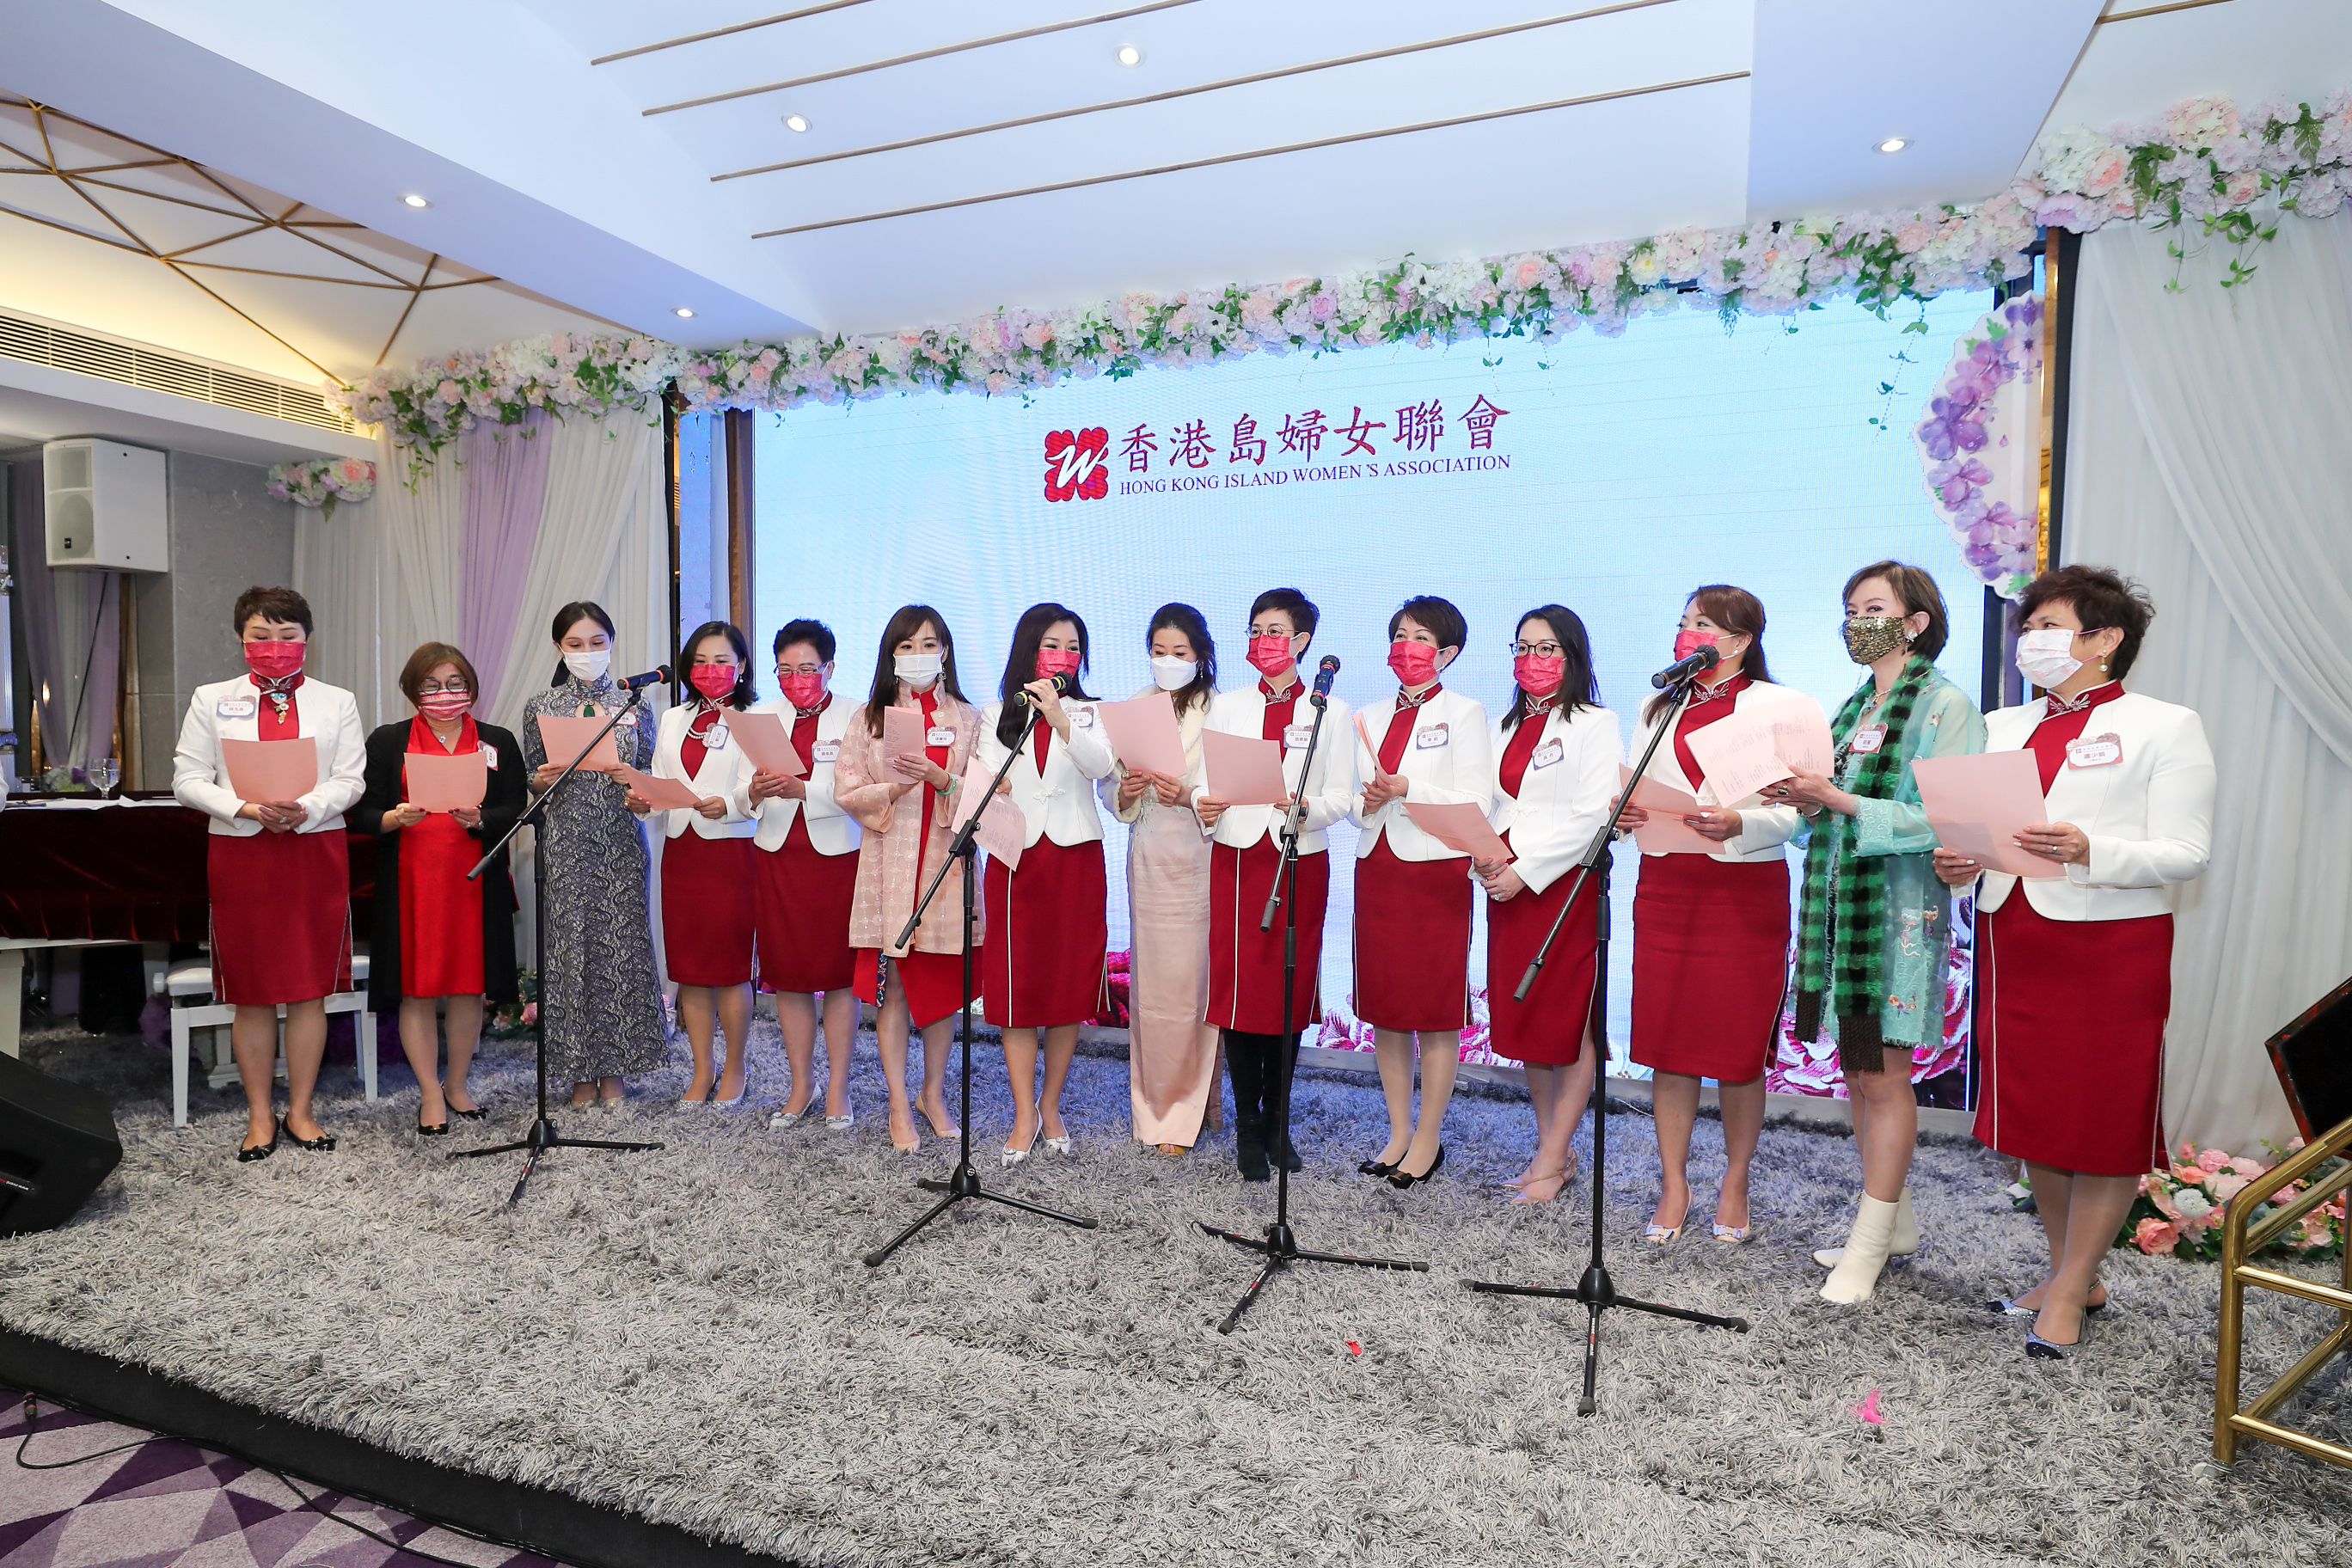 各姐妹們演唱香港島婦女聯會會歌《愛生命擁抱》.jpg